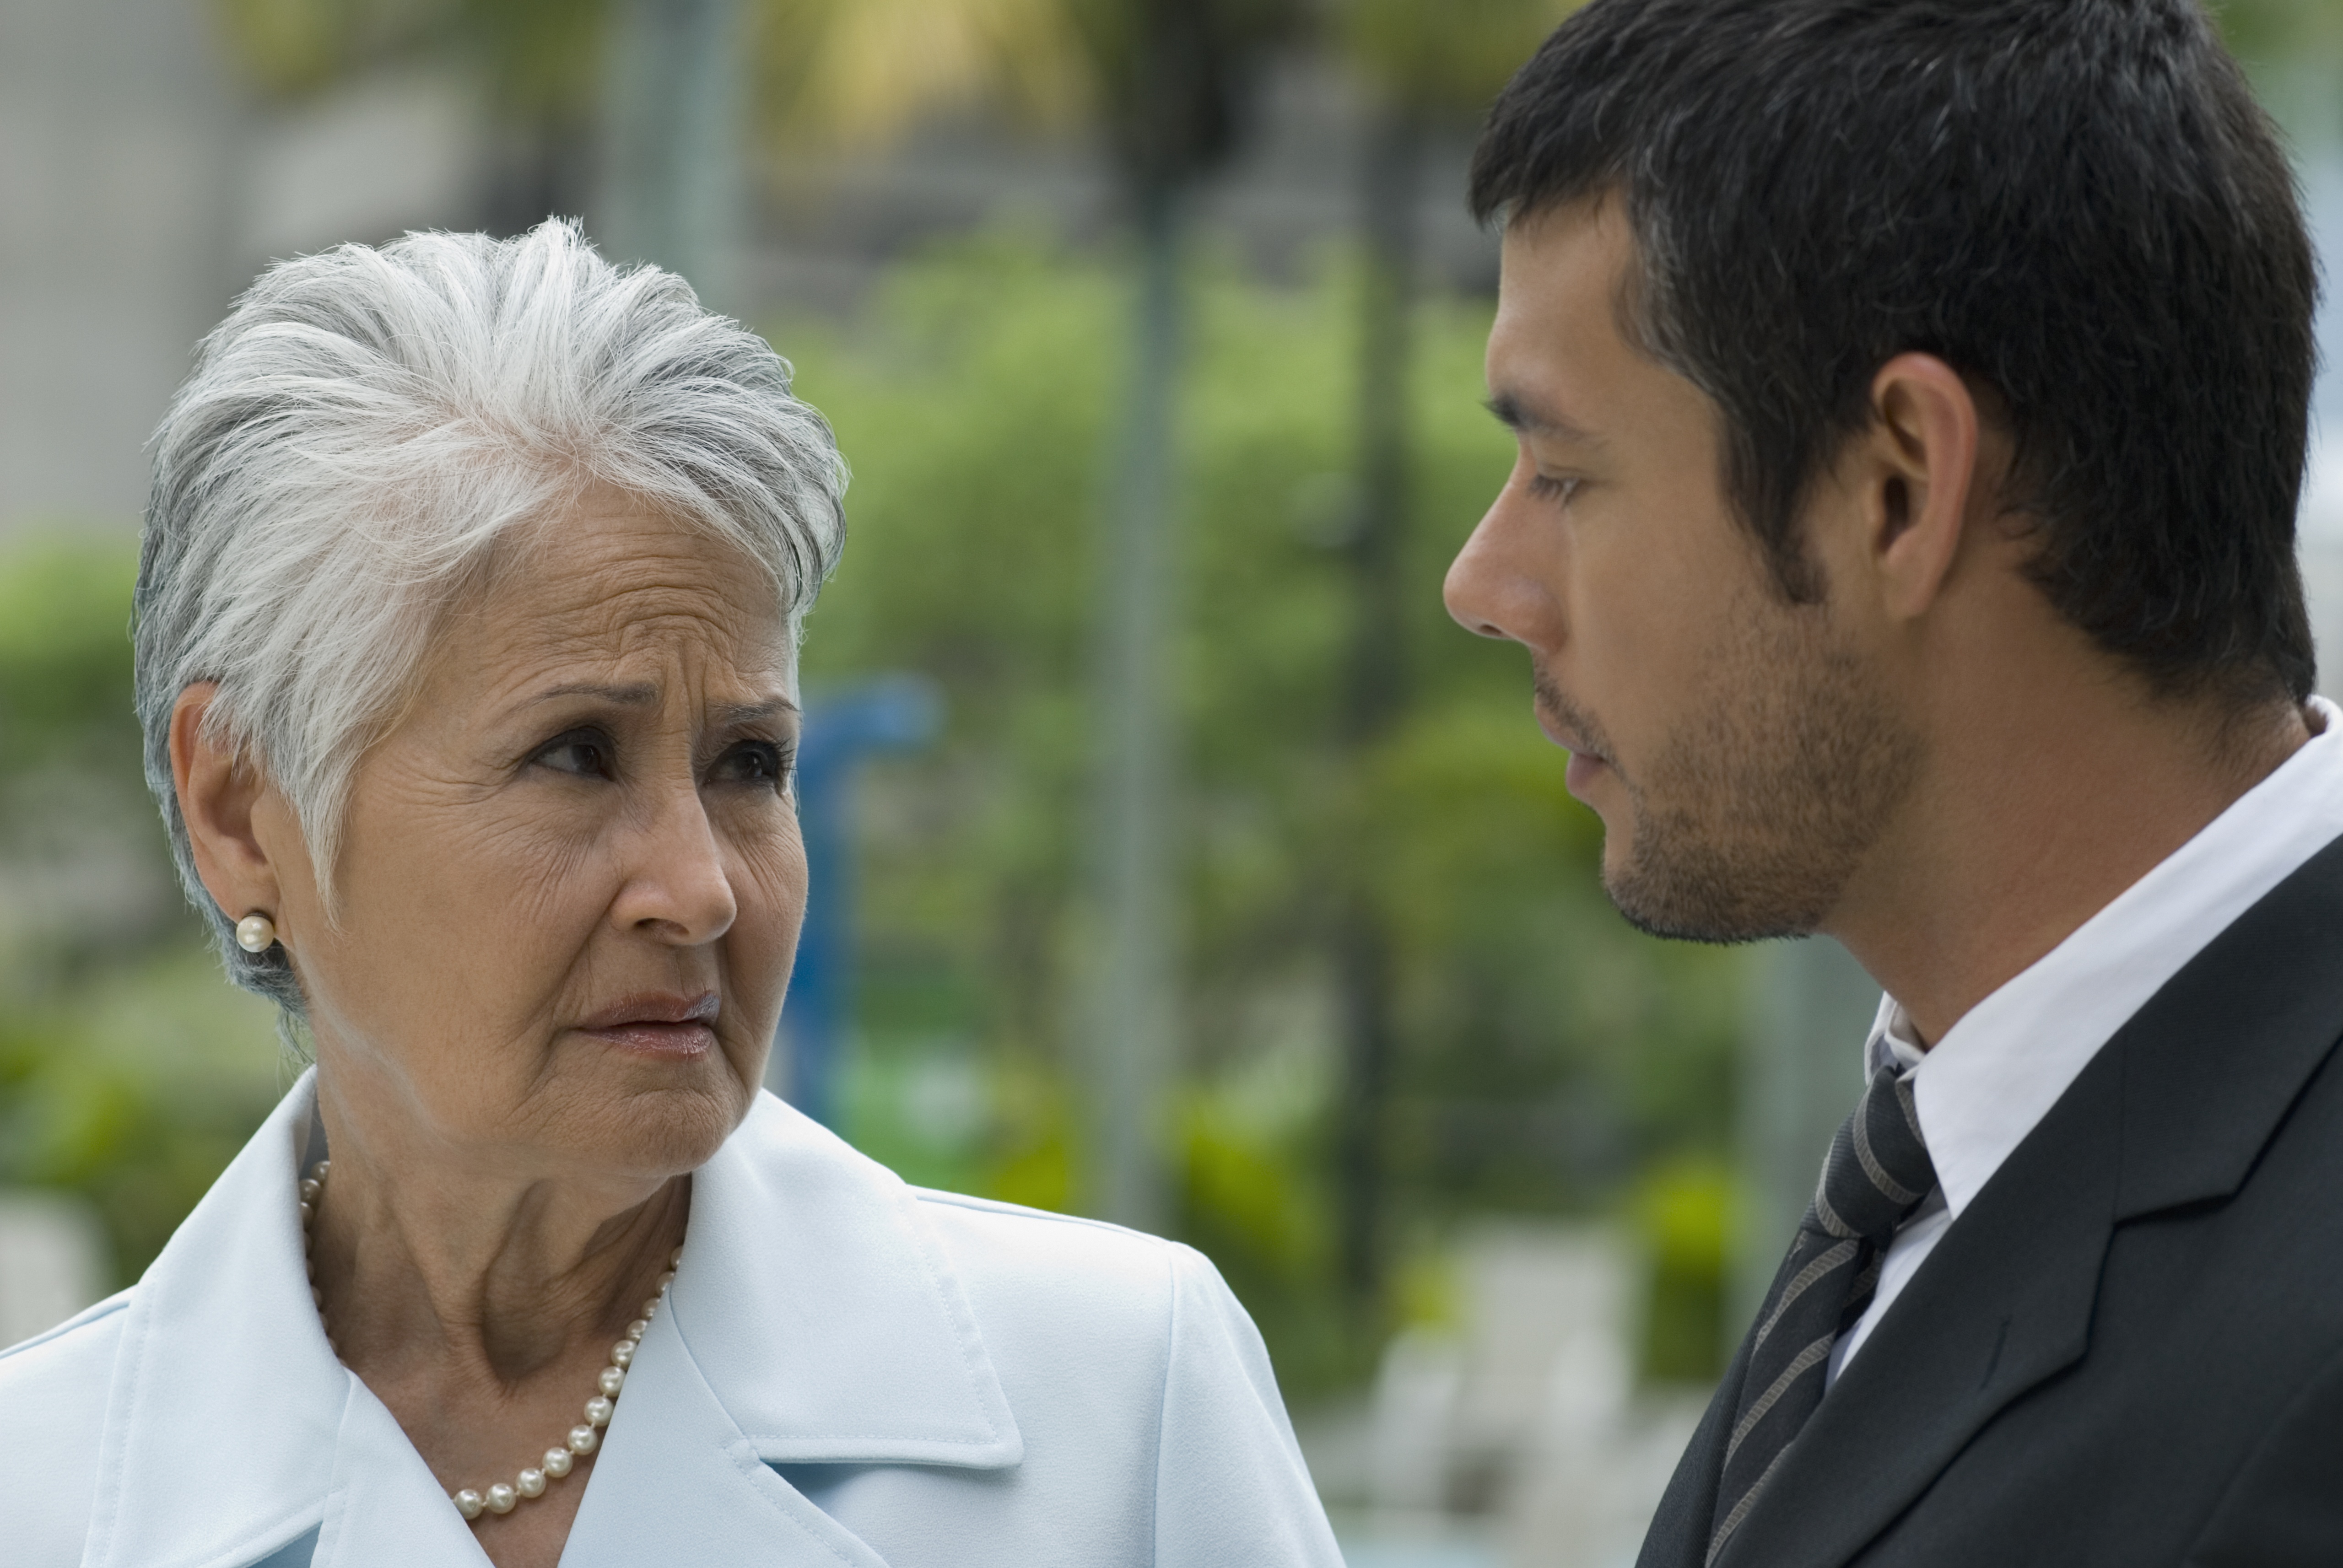 Eine ältere Frau und ihr Sohn im Gespräch | Quelle: Shutterstock